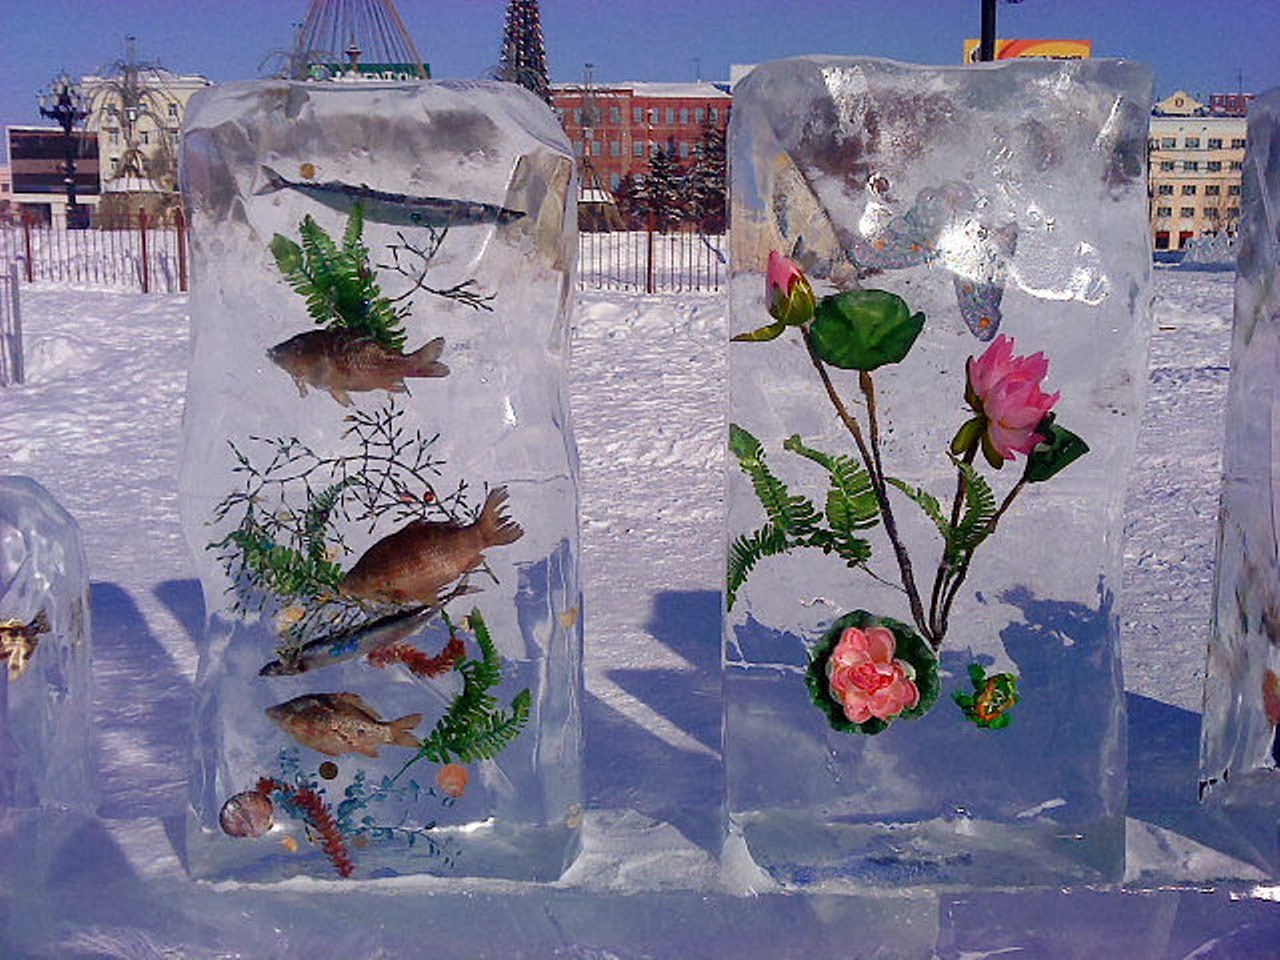 Шарики изо льда. Ледяные украшения для детского сада. Ледяные фигурки для детского сада. Ледяные скульптуры в садик. Украшения из льда для детского сада.